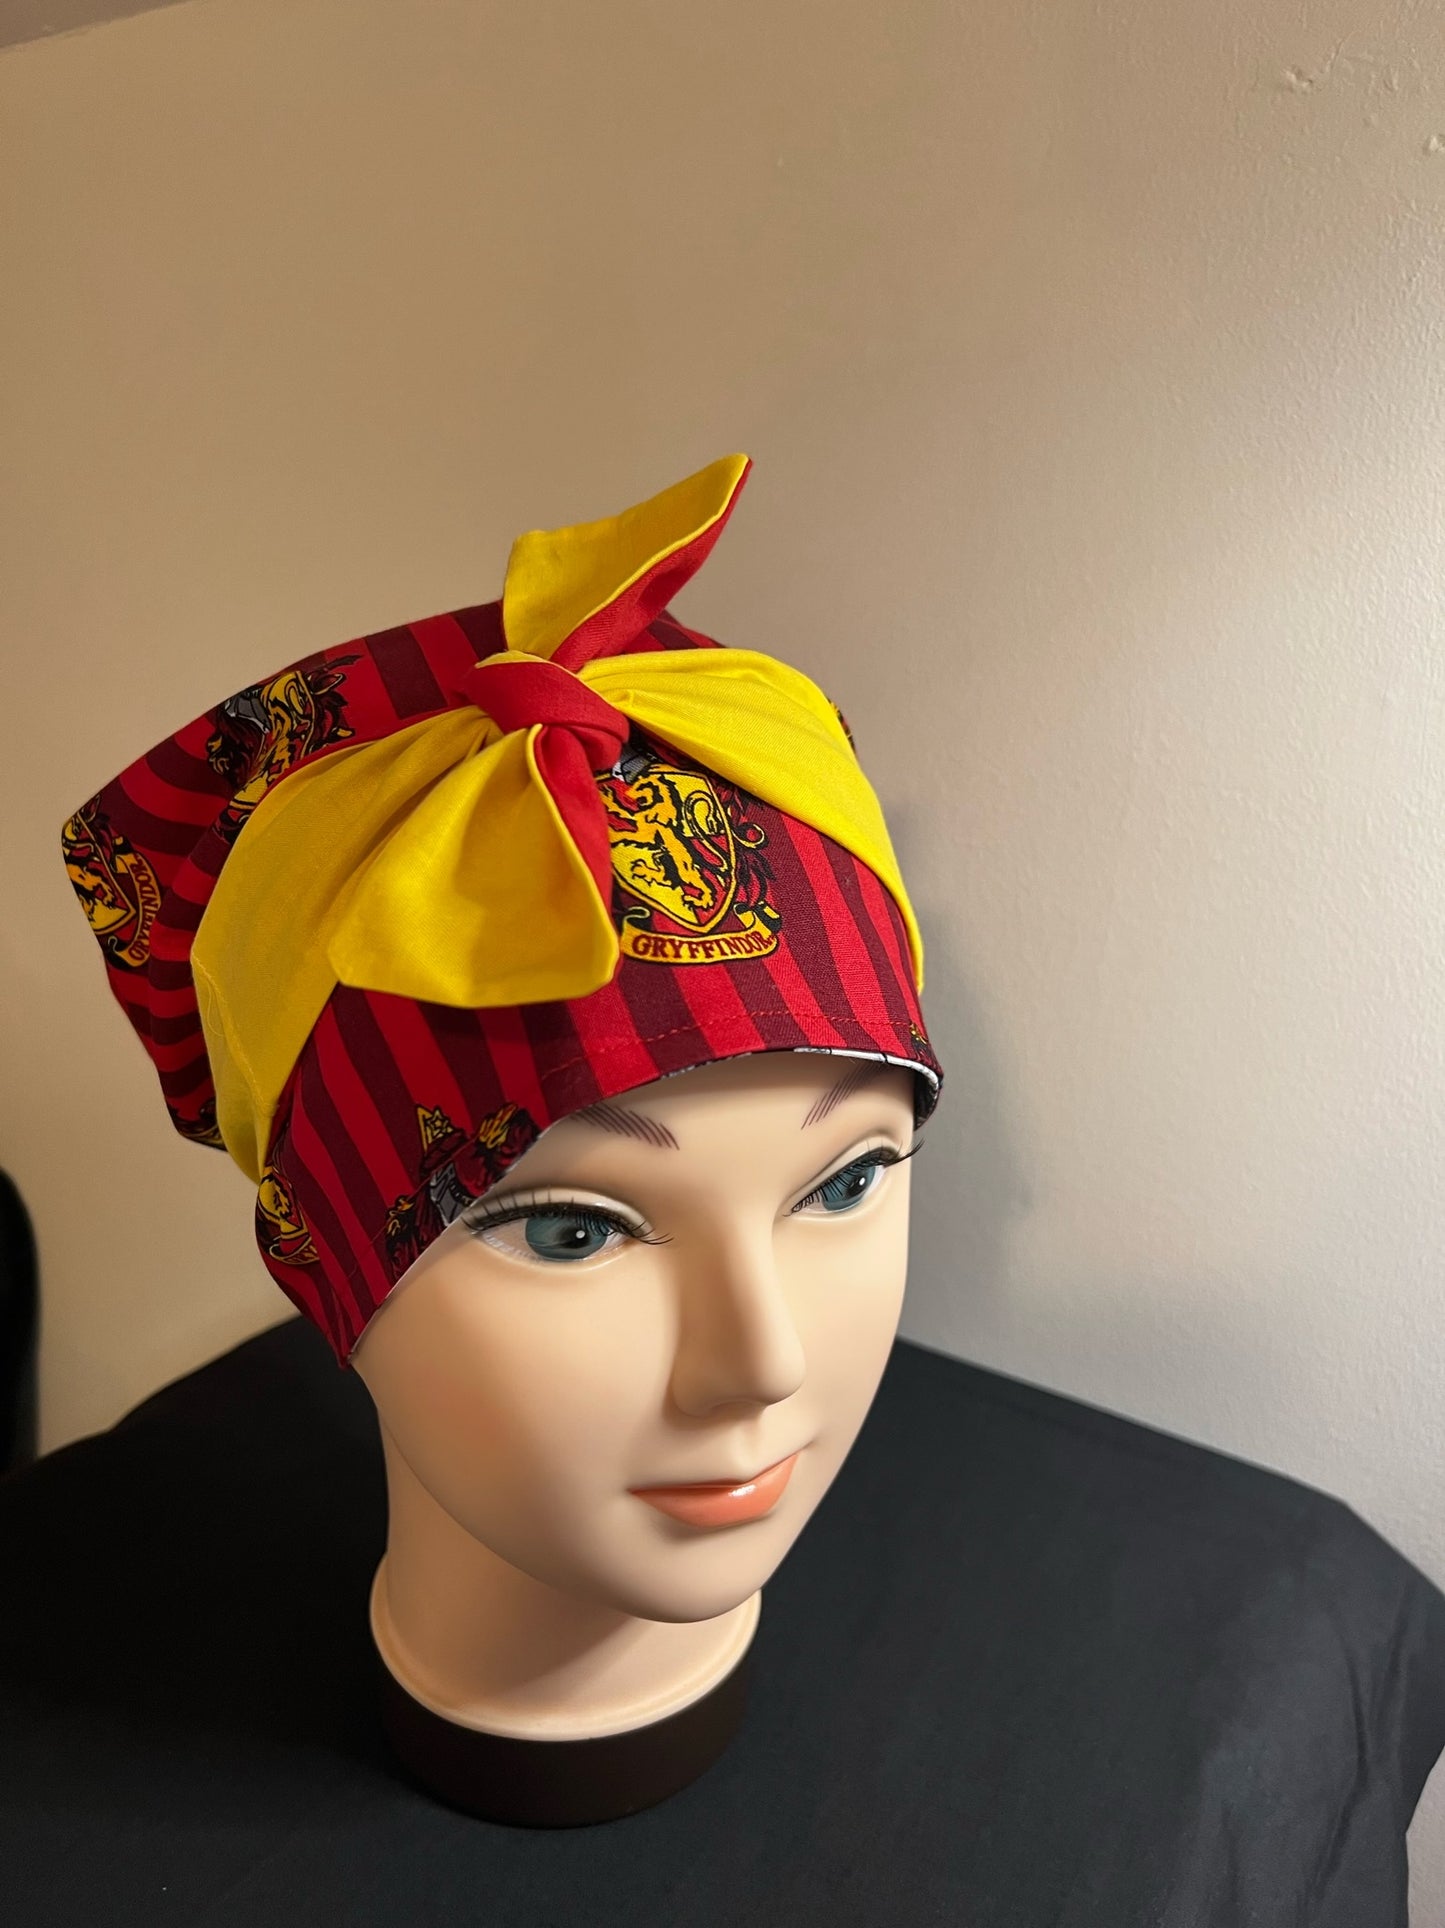 harry potter design handmade satin lined scrub bonnet for natural hair